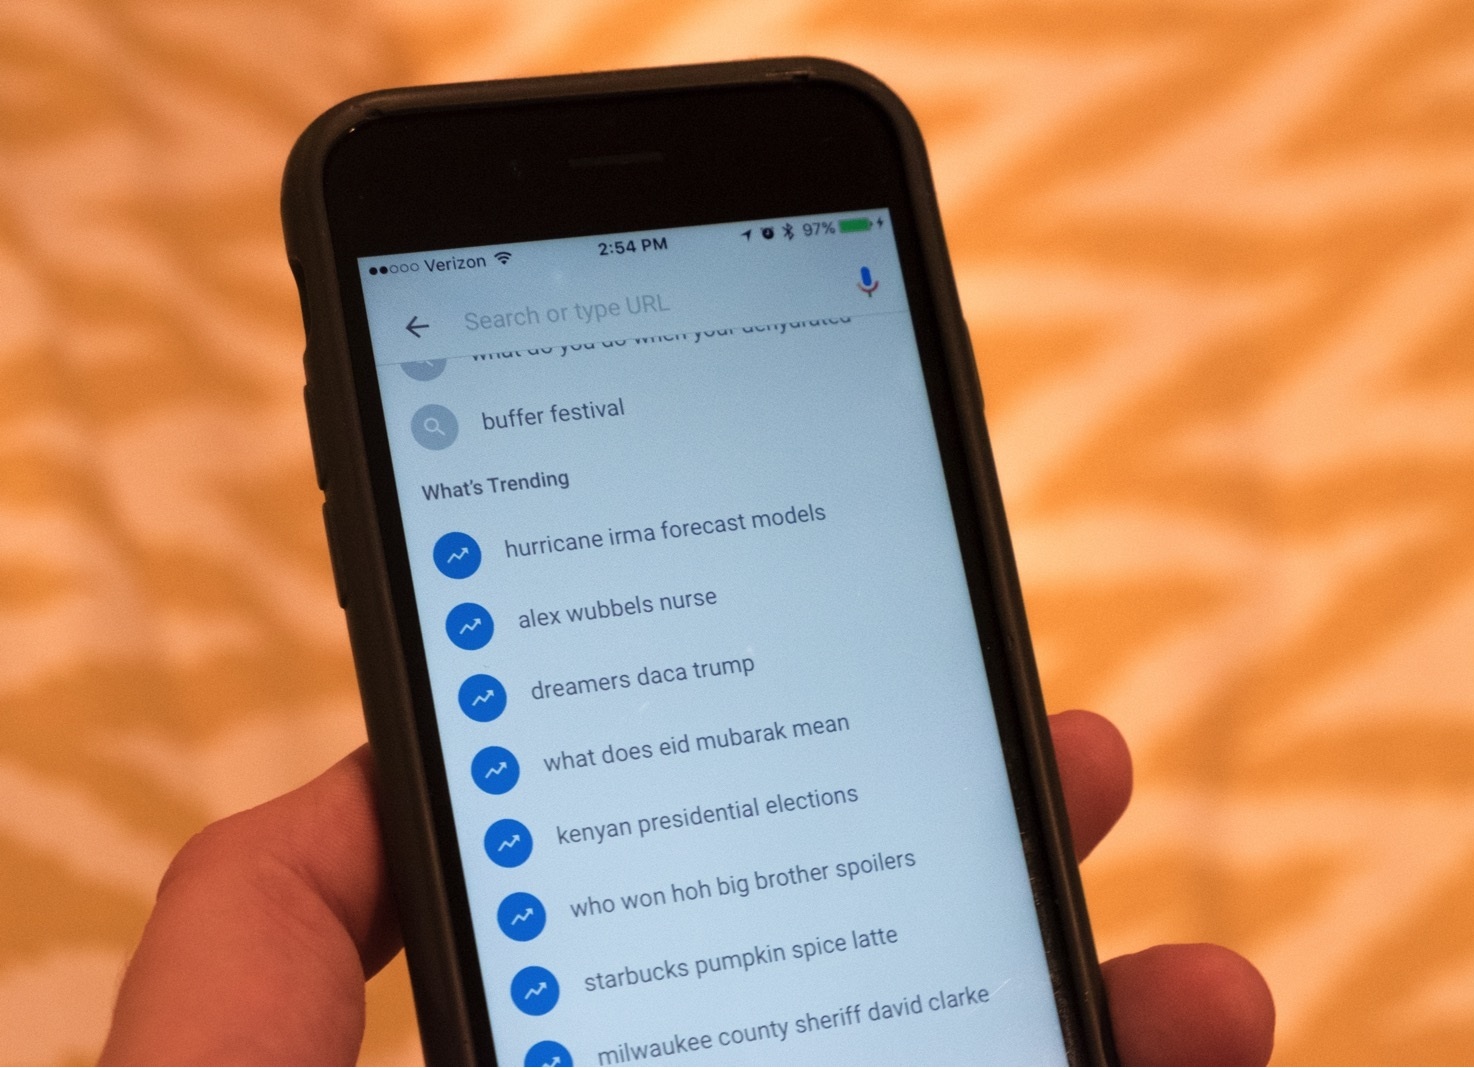 Googlein iOS uygulamasi simdi trend arayan aramalari gosteriyor